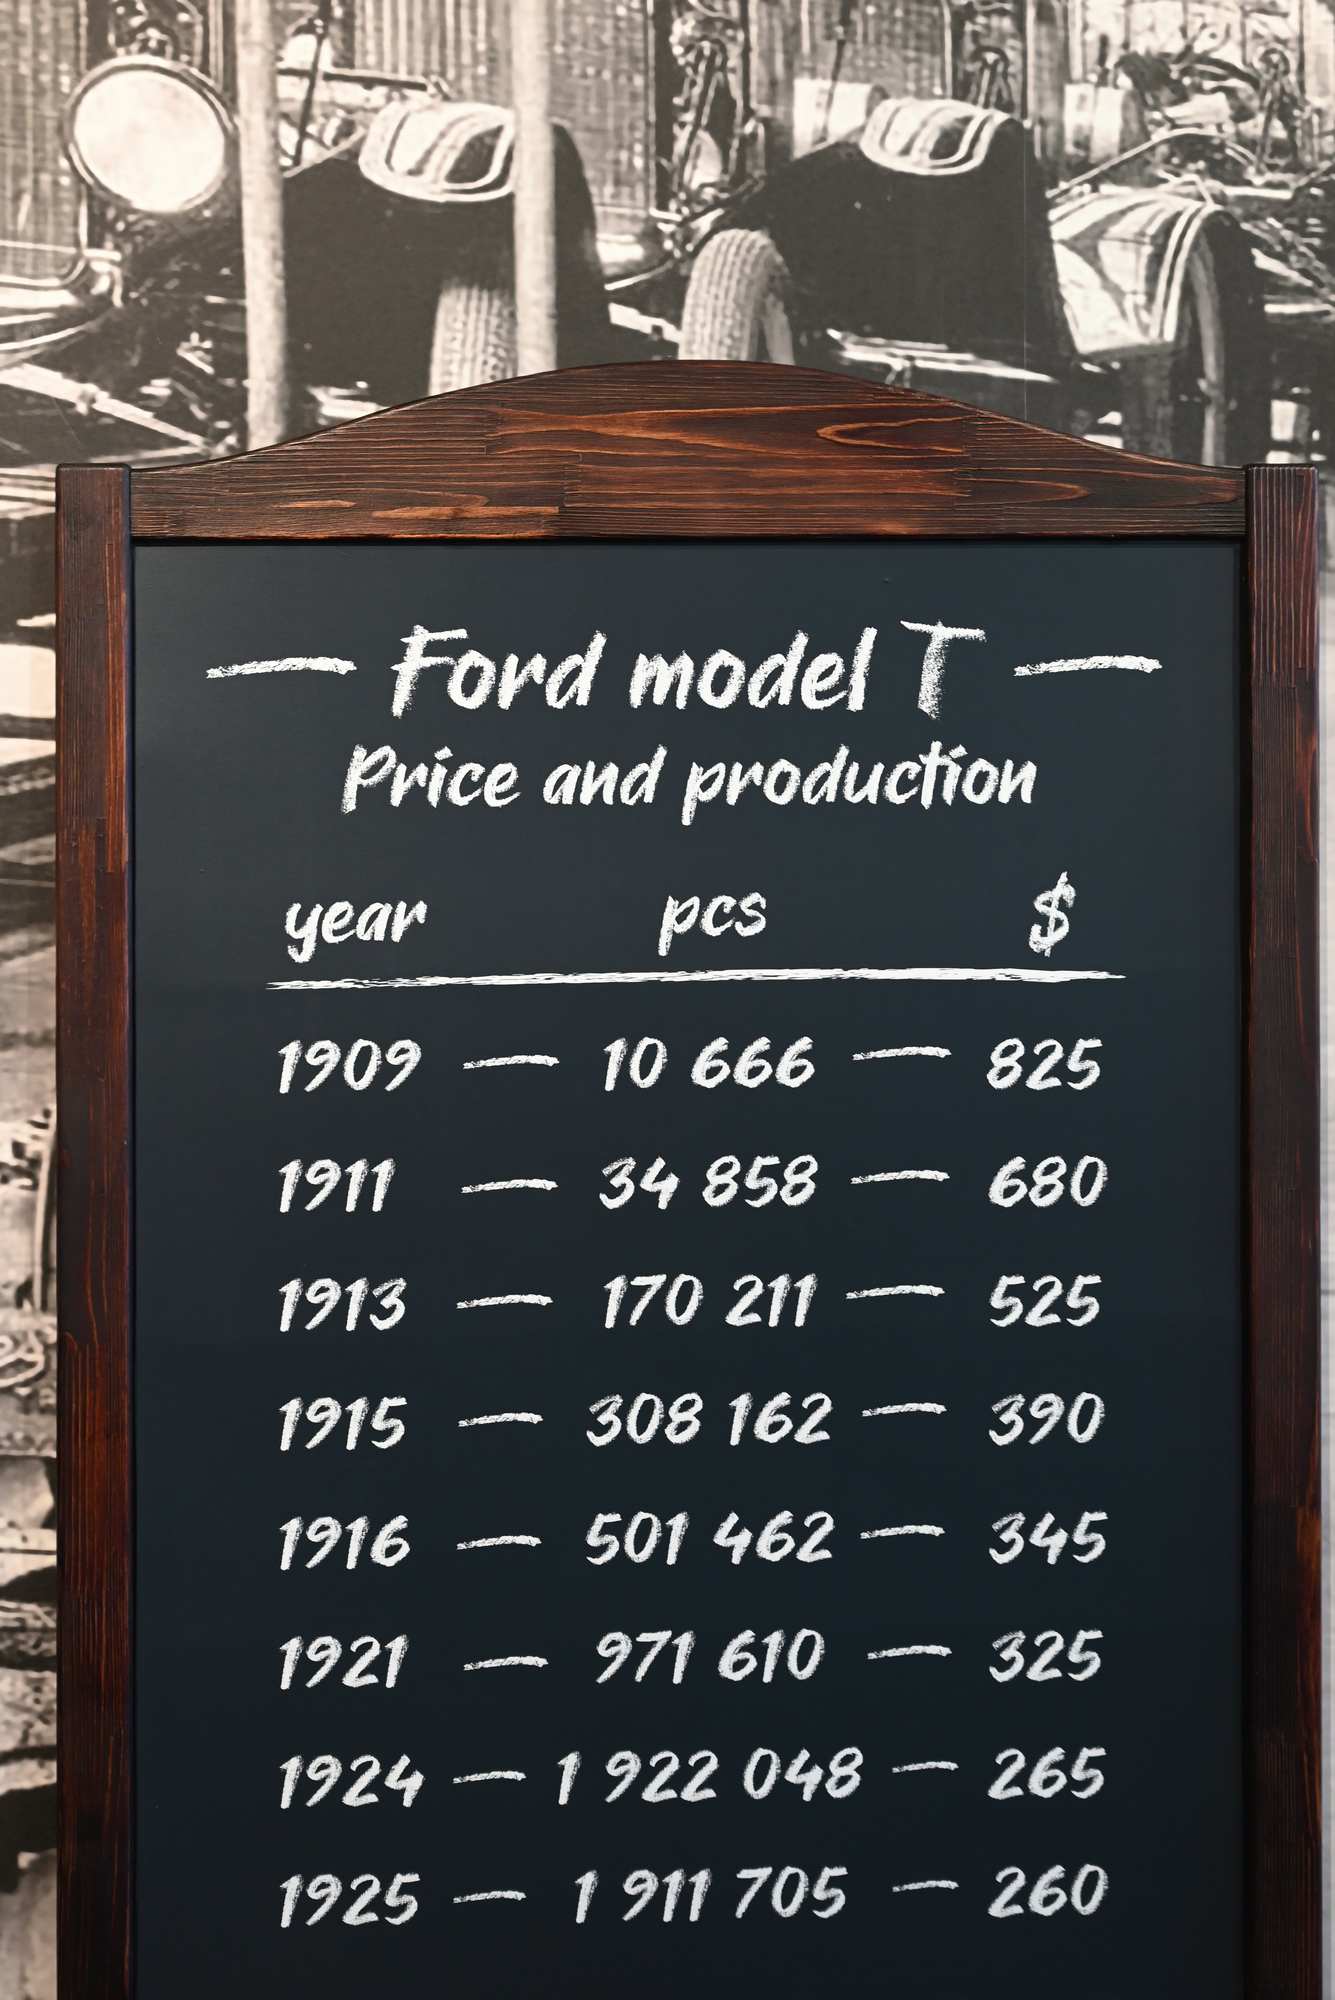 Екатеринбург. Музей автомобильной техники в Верхней Пышме. Изменение стоимости Ford Model T с 1909 по 1925 годы.